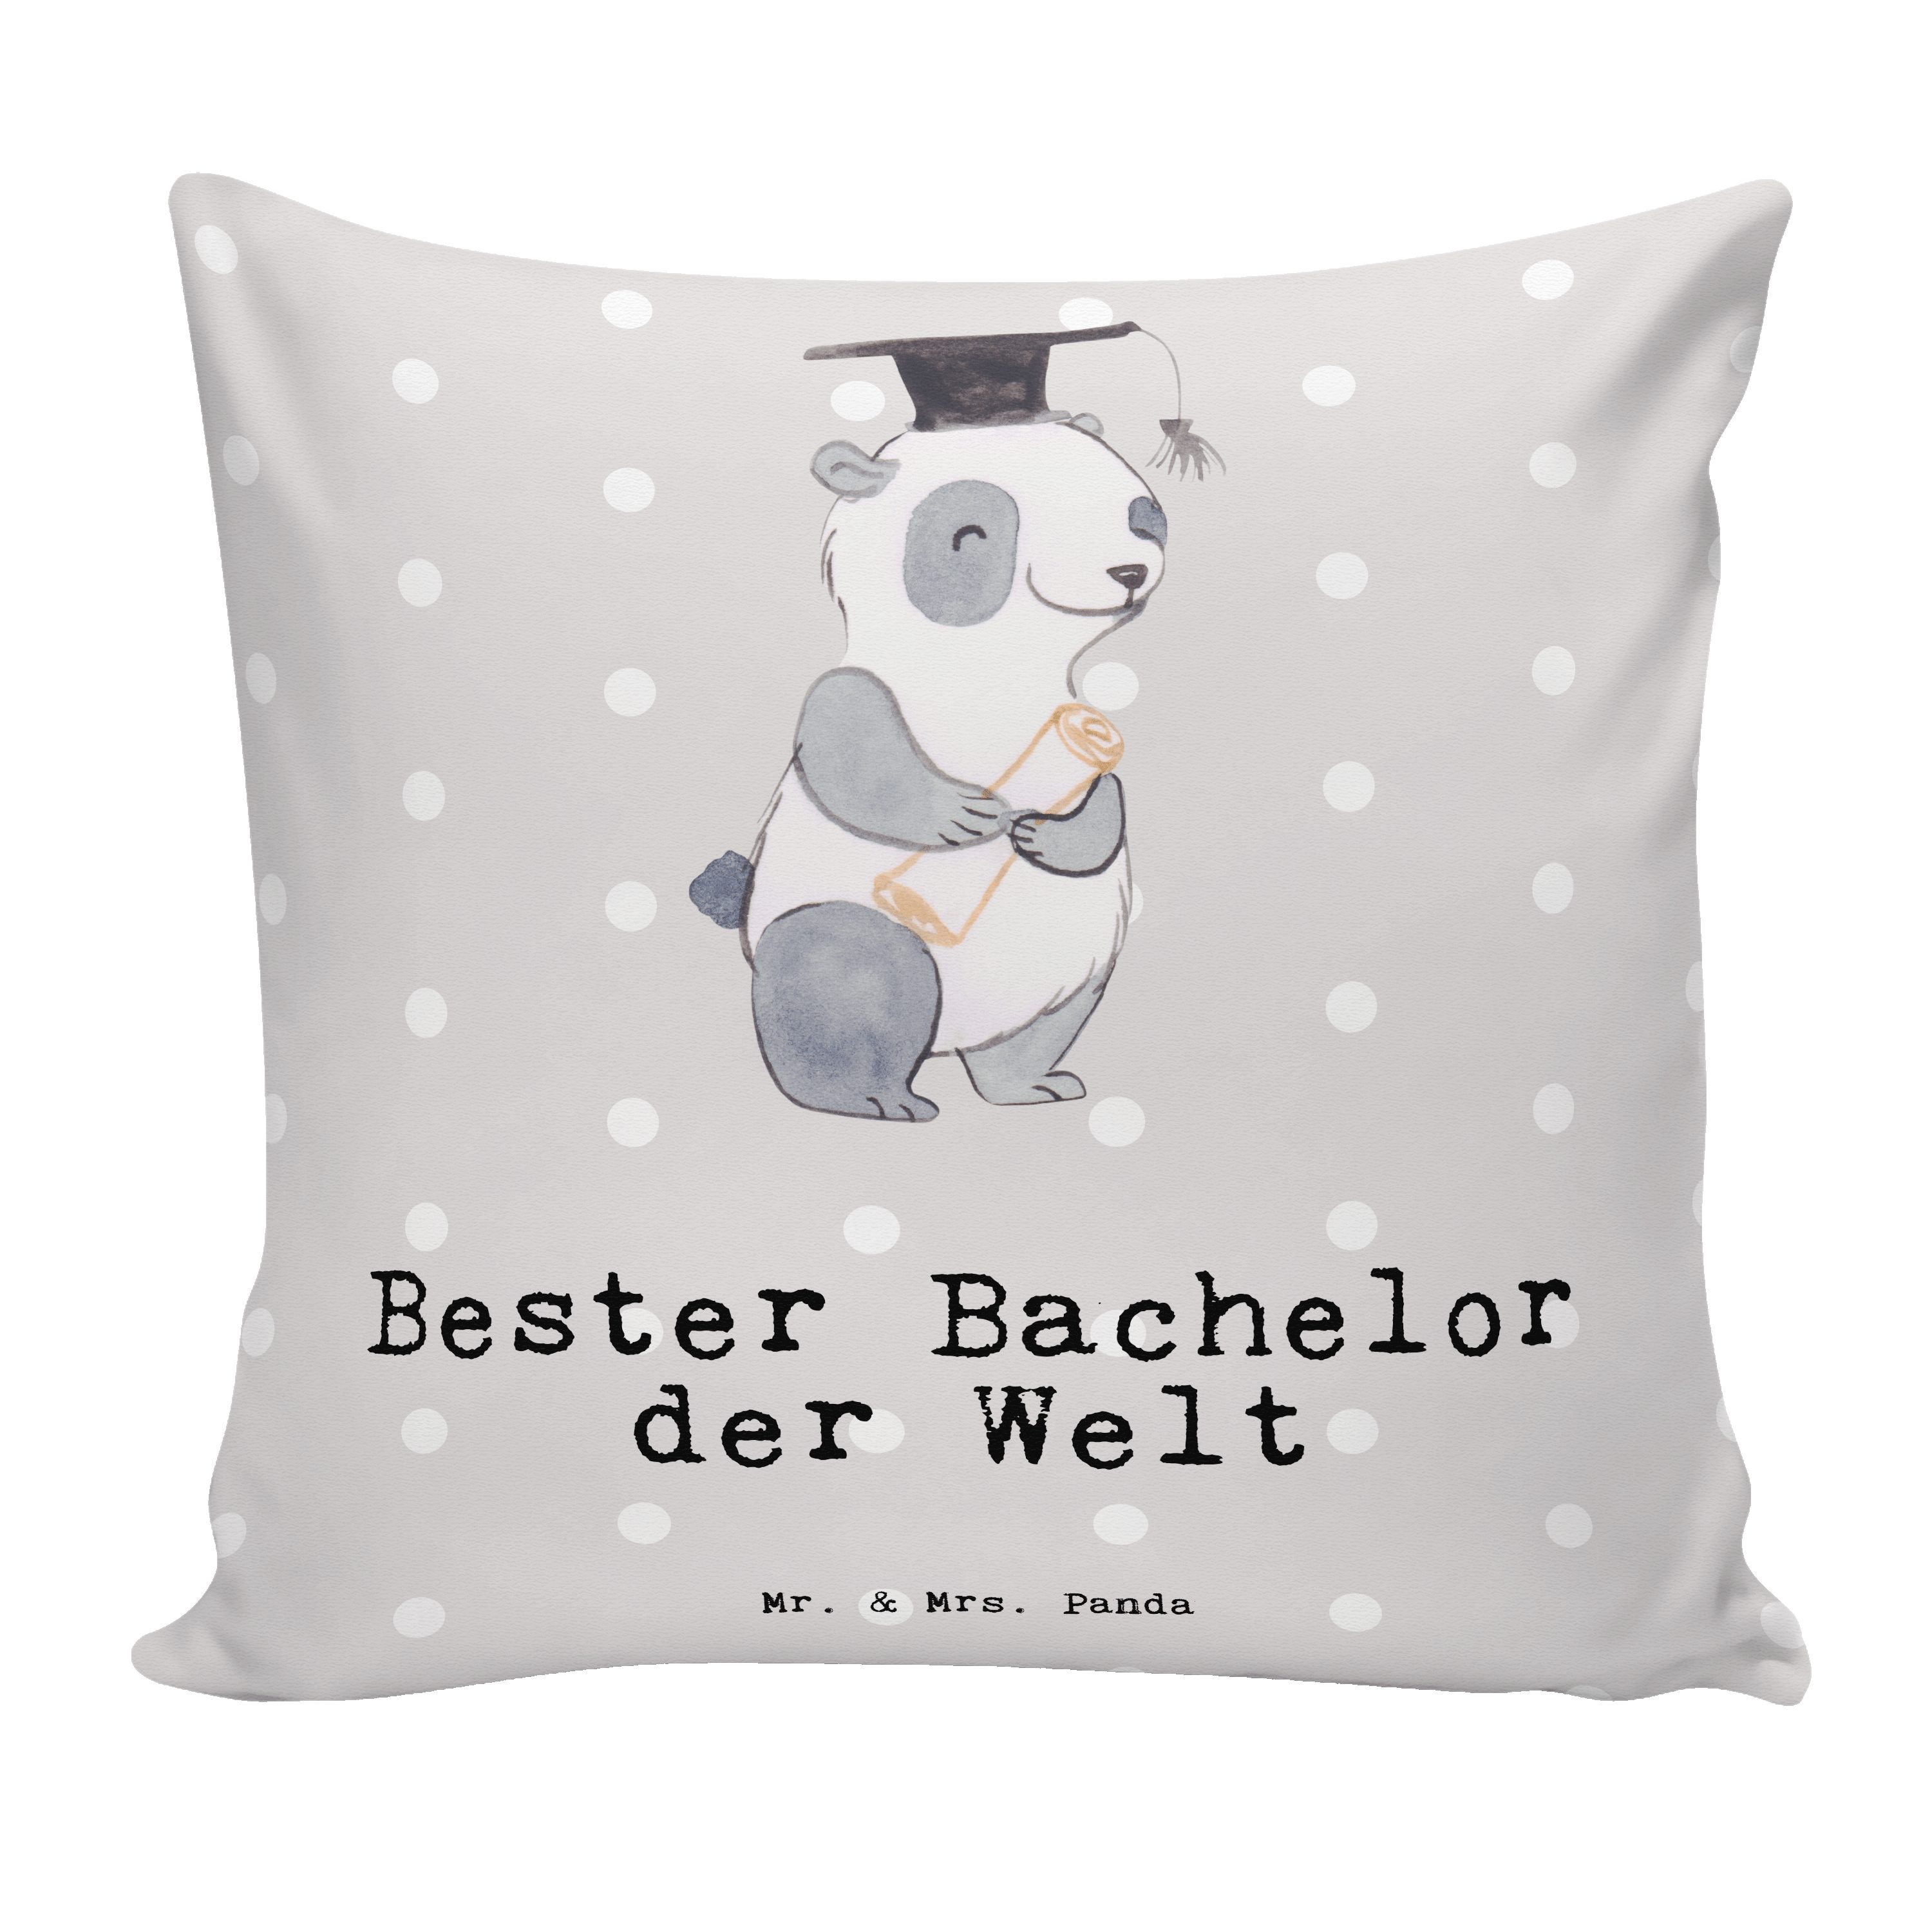 Mr. & Mrs. Panda Dekokissen Panda Bester Bachelor der Welt - Grau Pastell - Geschenk, Freude mach